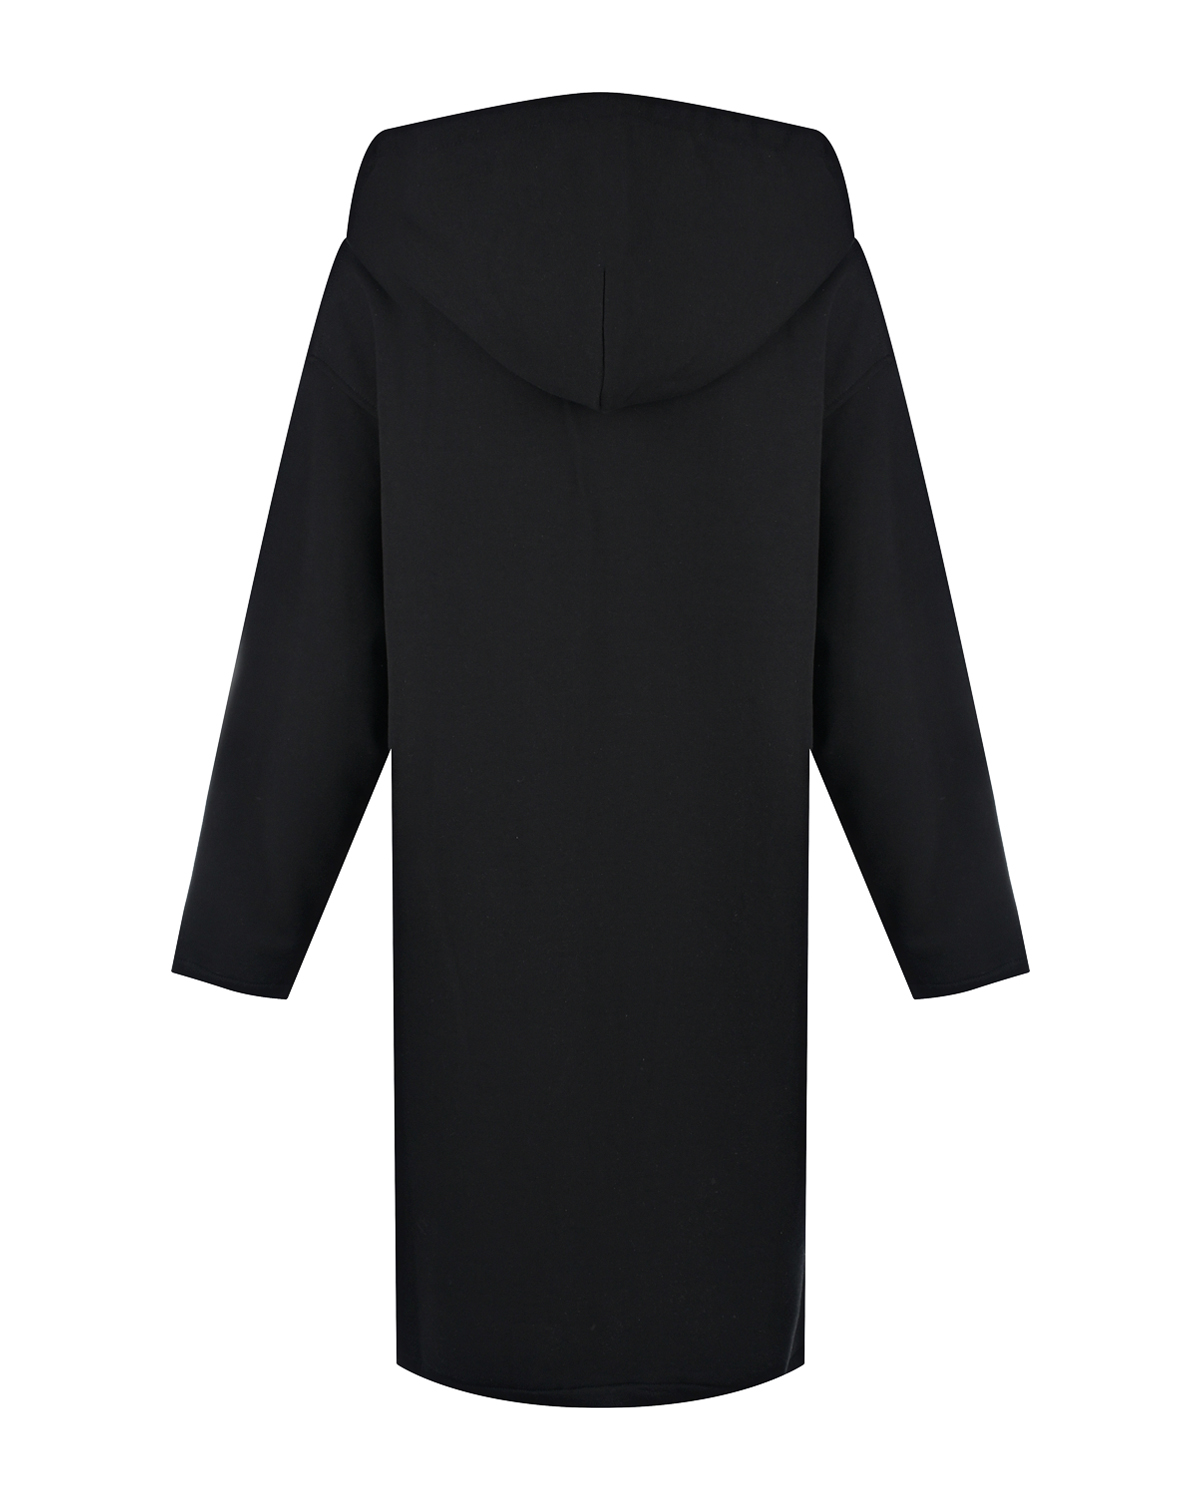 Черное платье-худи Hinnominate, размер 40, цвет черный - фото 5